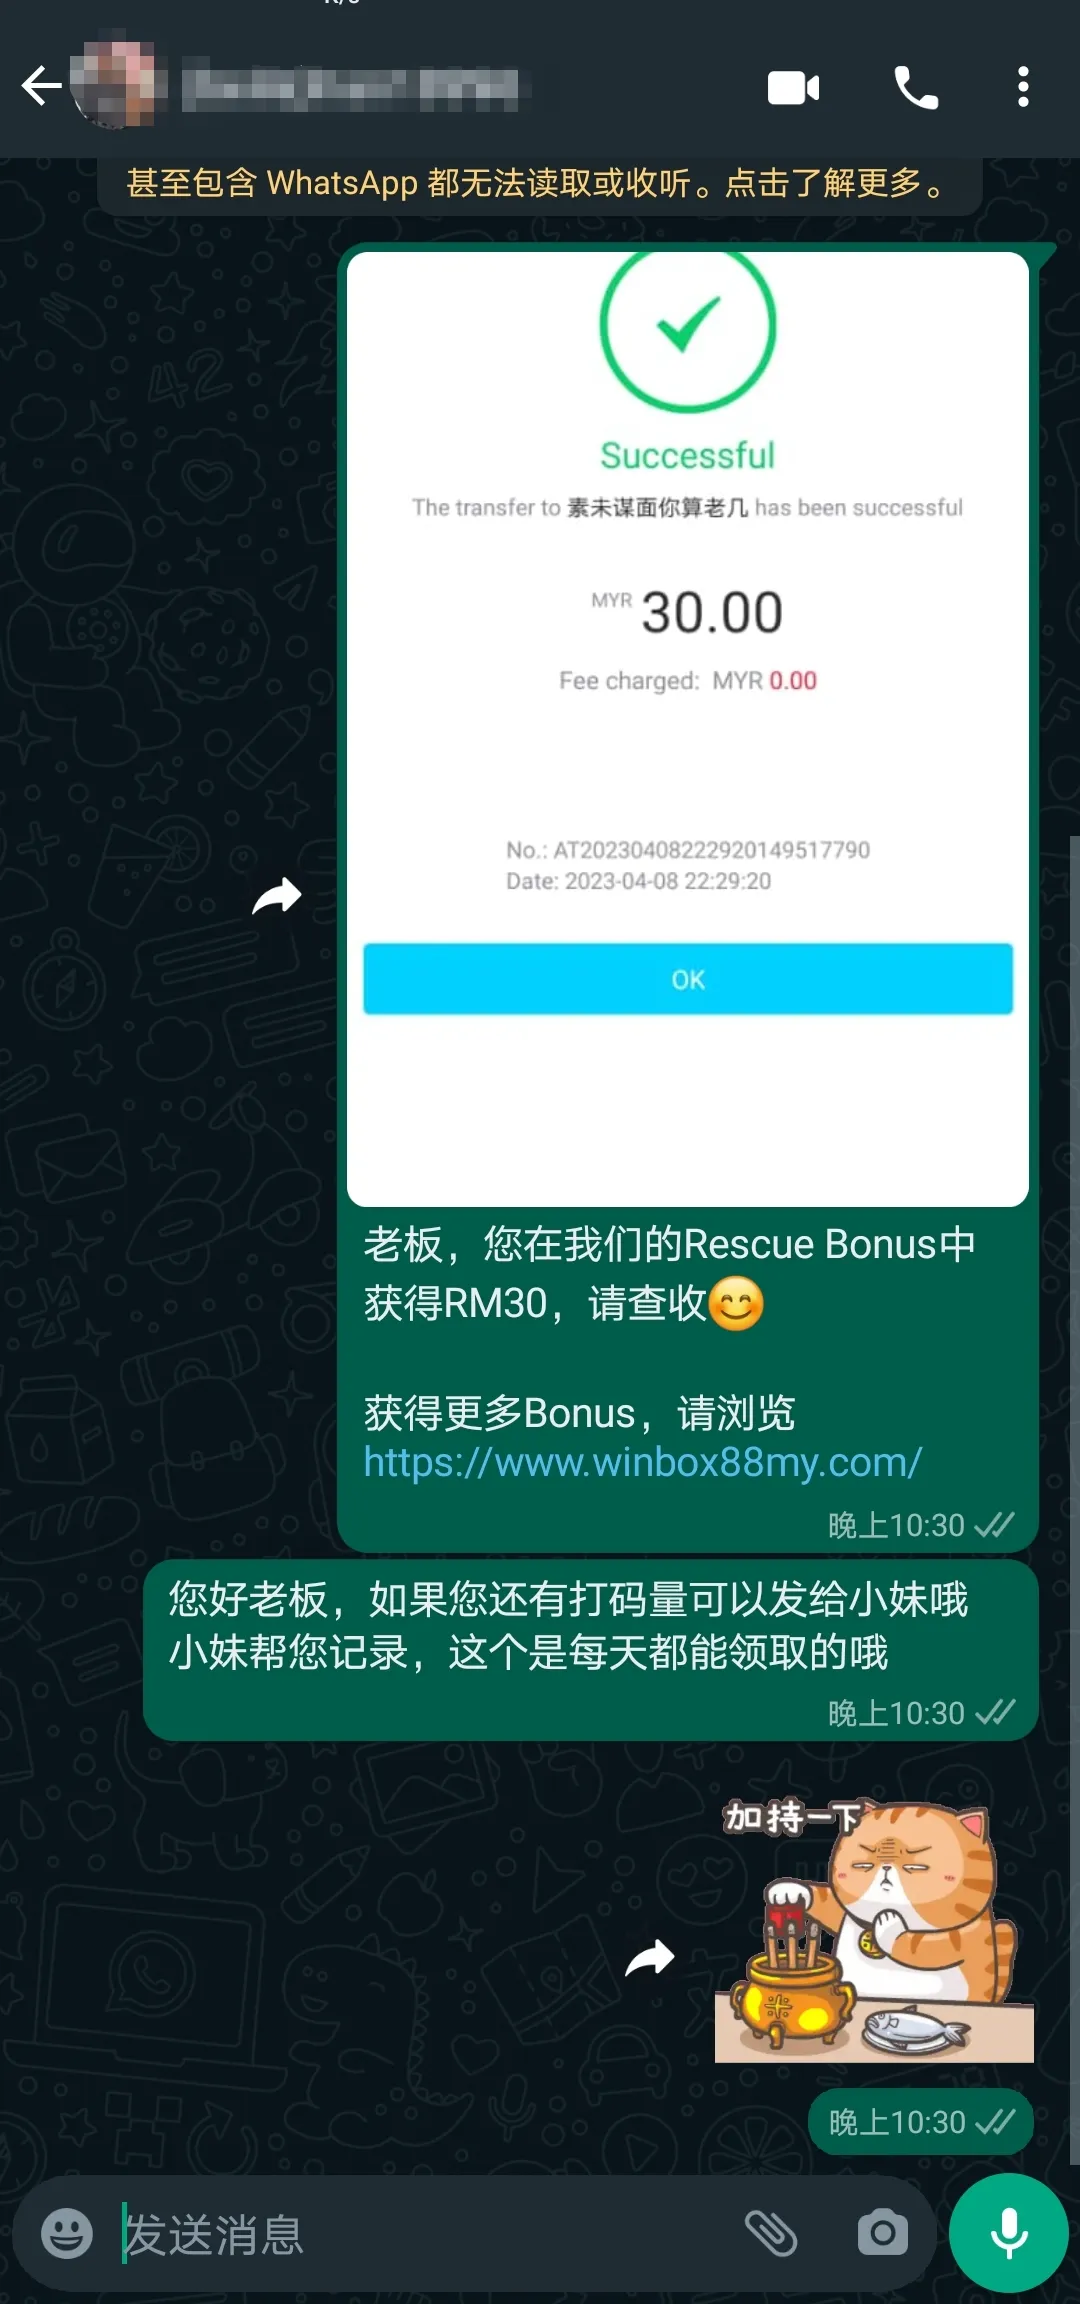 winbox rescue bonus past winner screenshot 50